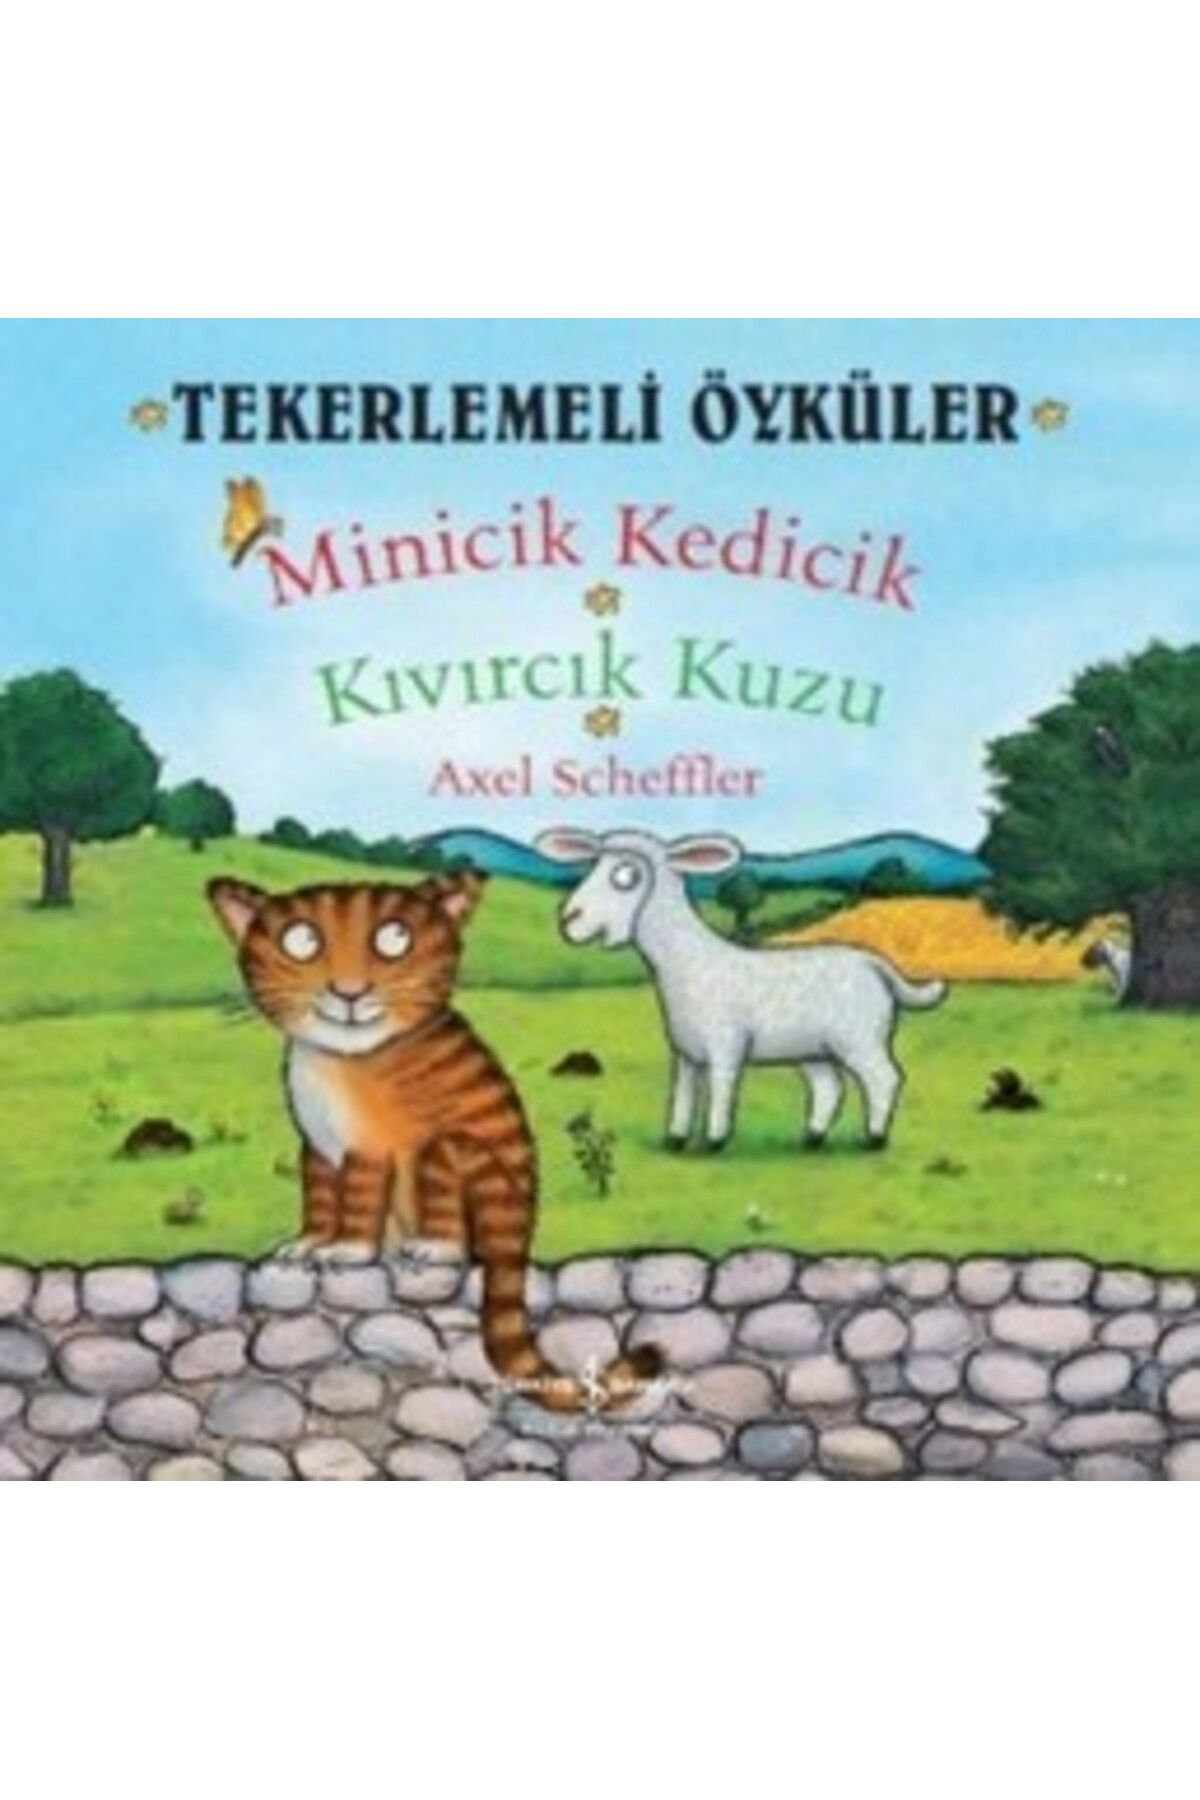 Türkiye İş Bankası Kültür Yayınları Tekerlemeli Öyküler : Minicik Kedicik - Kıvırcık Kuzu